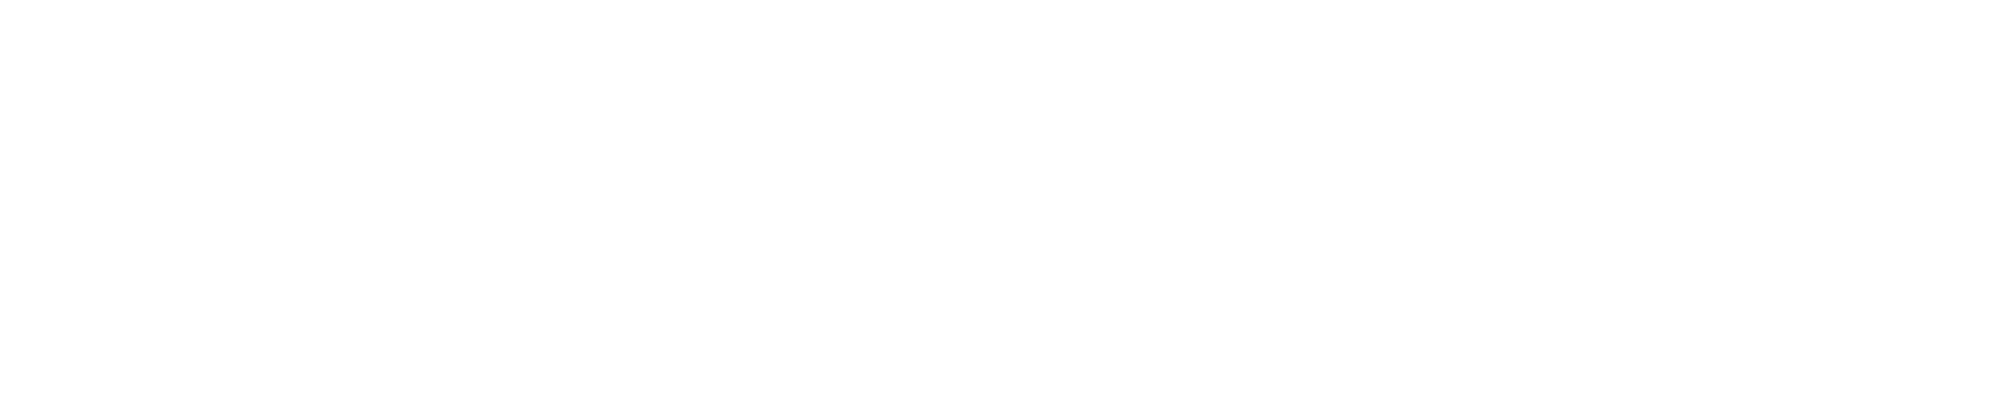 contact_bnr